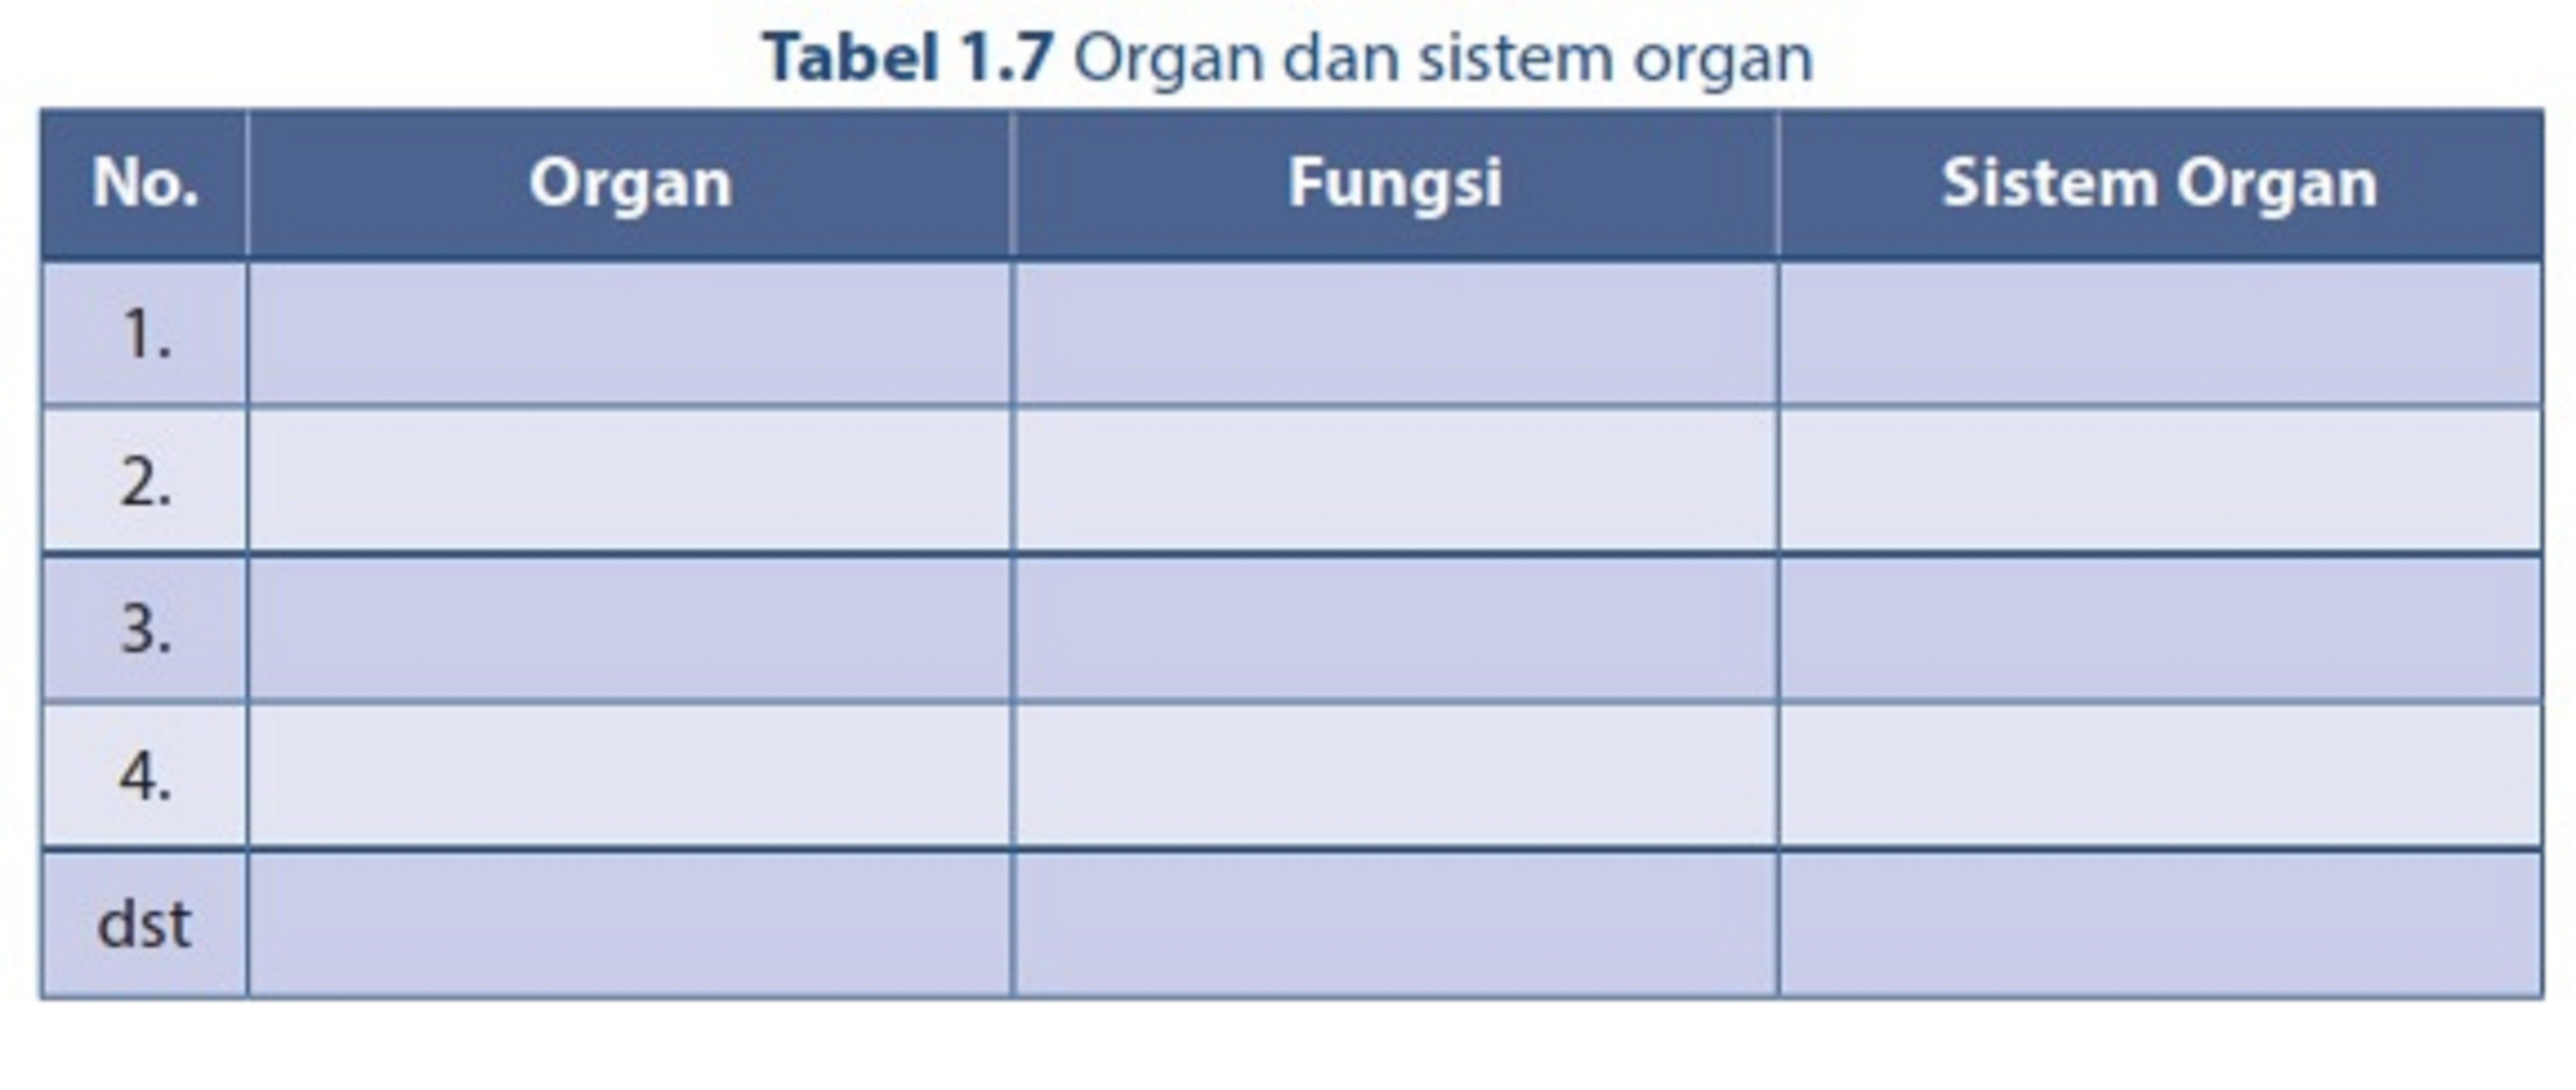 Fungsi sistem organ sesuai gambar adalah